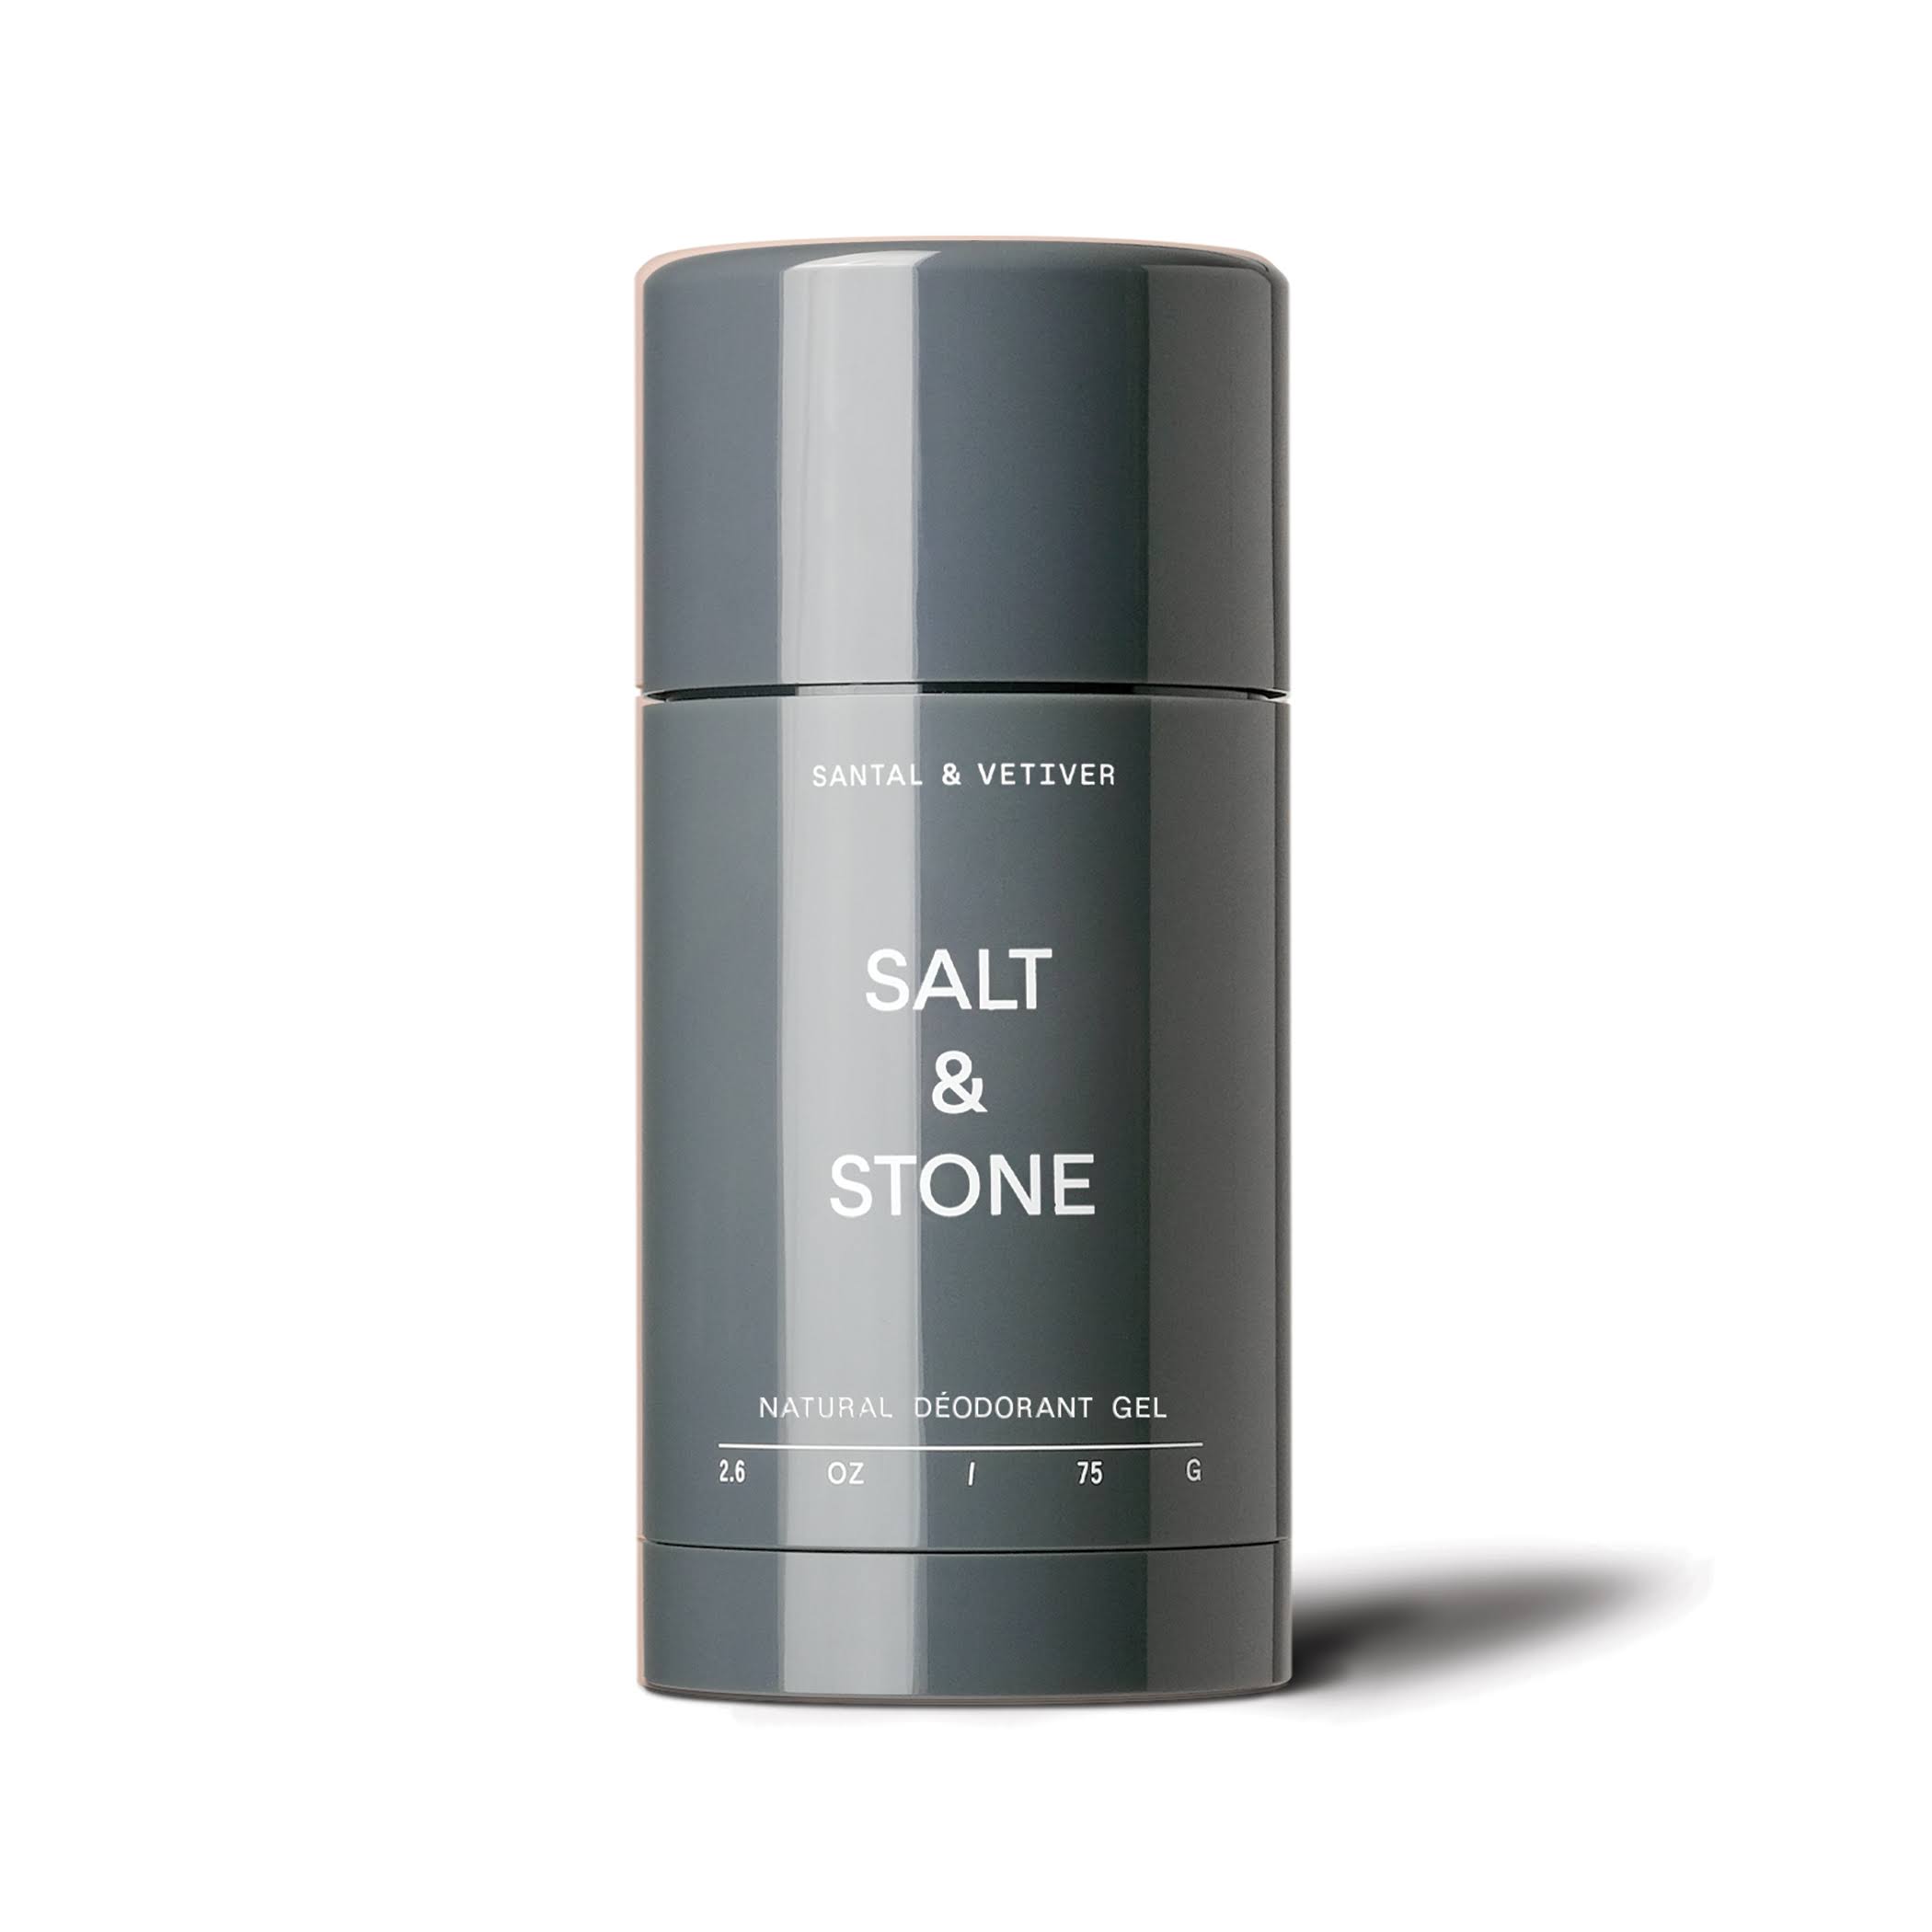 Salt & Stone Natural Deodorant 75g, Santal & Vetiver